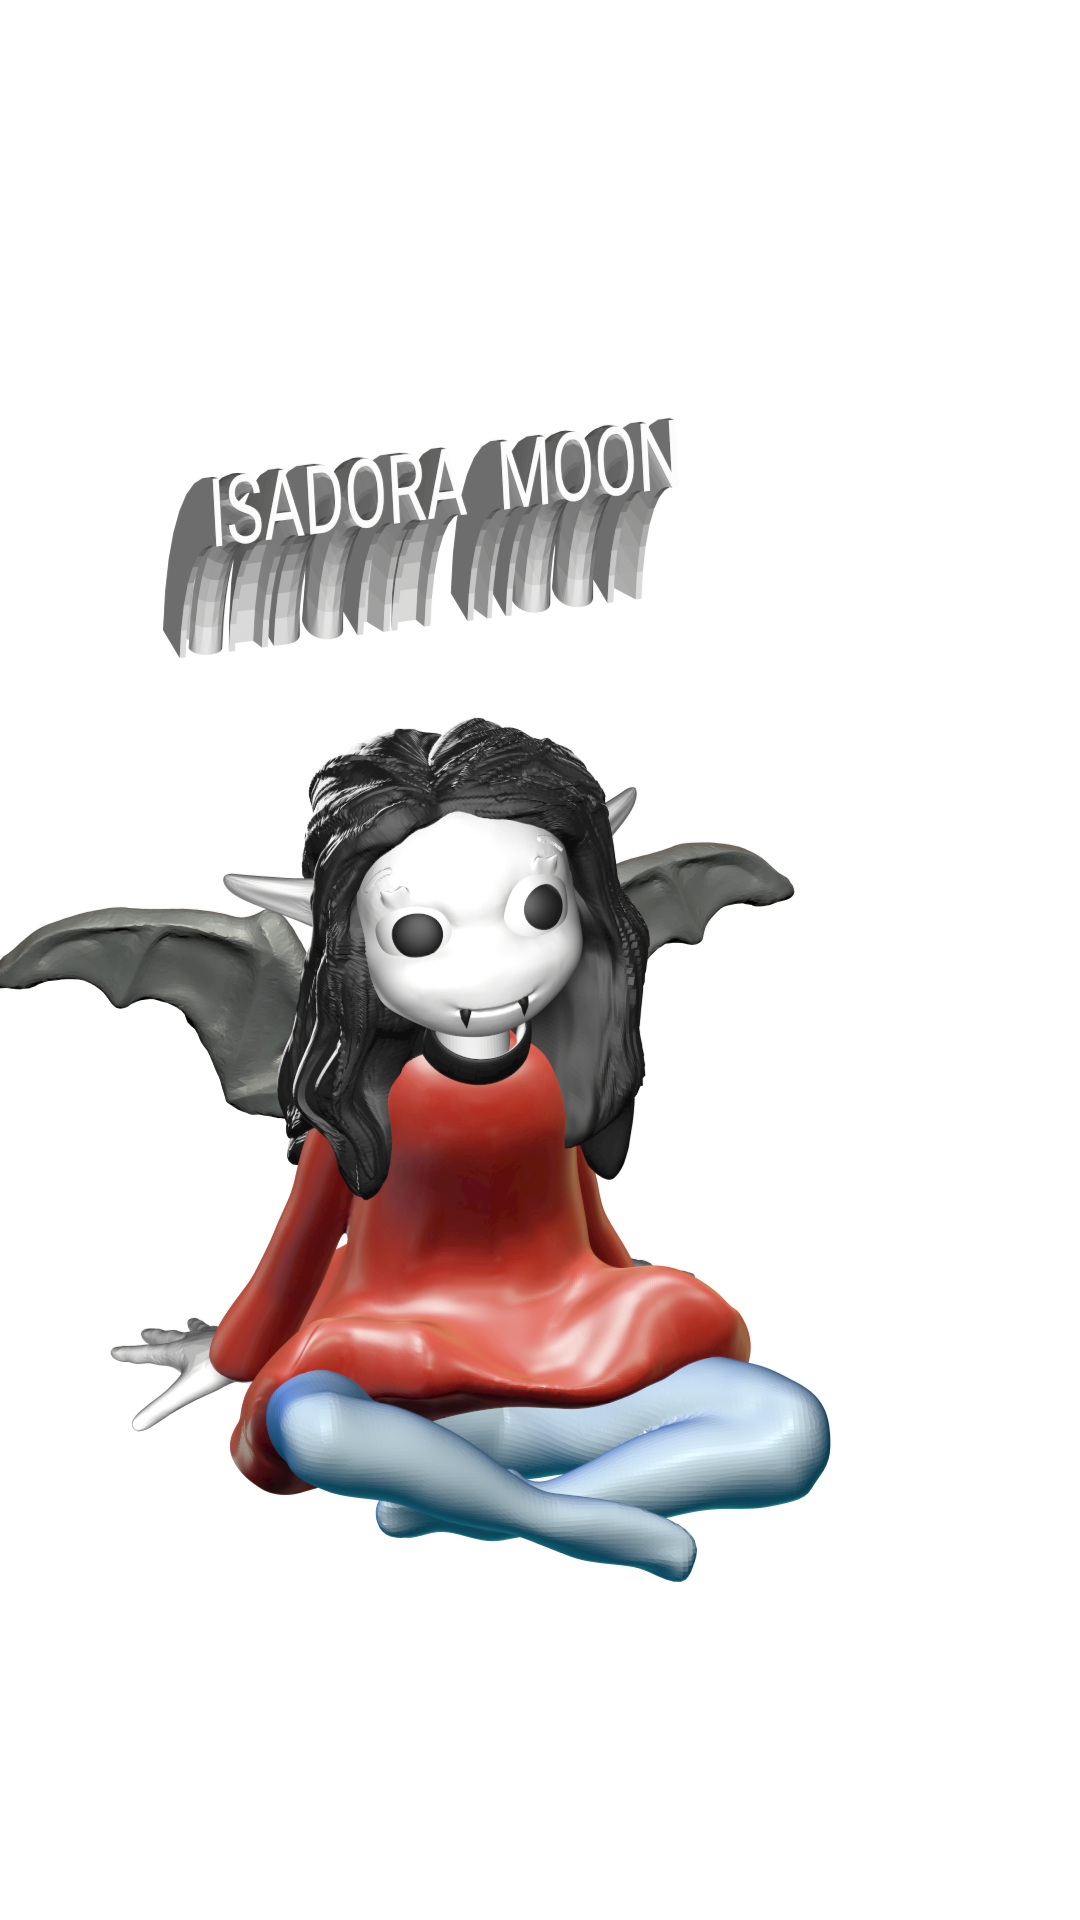 misad.png Télécharger fichier OBJ Isadora moon • Modèle pour impression 3D, jorgeps4